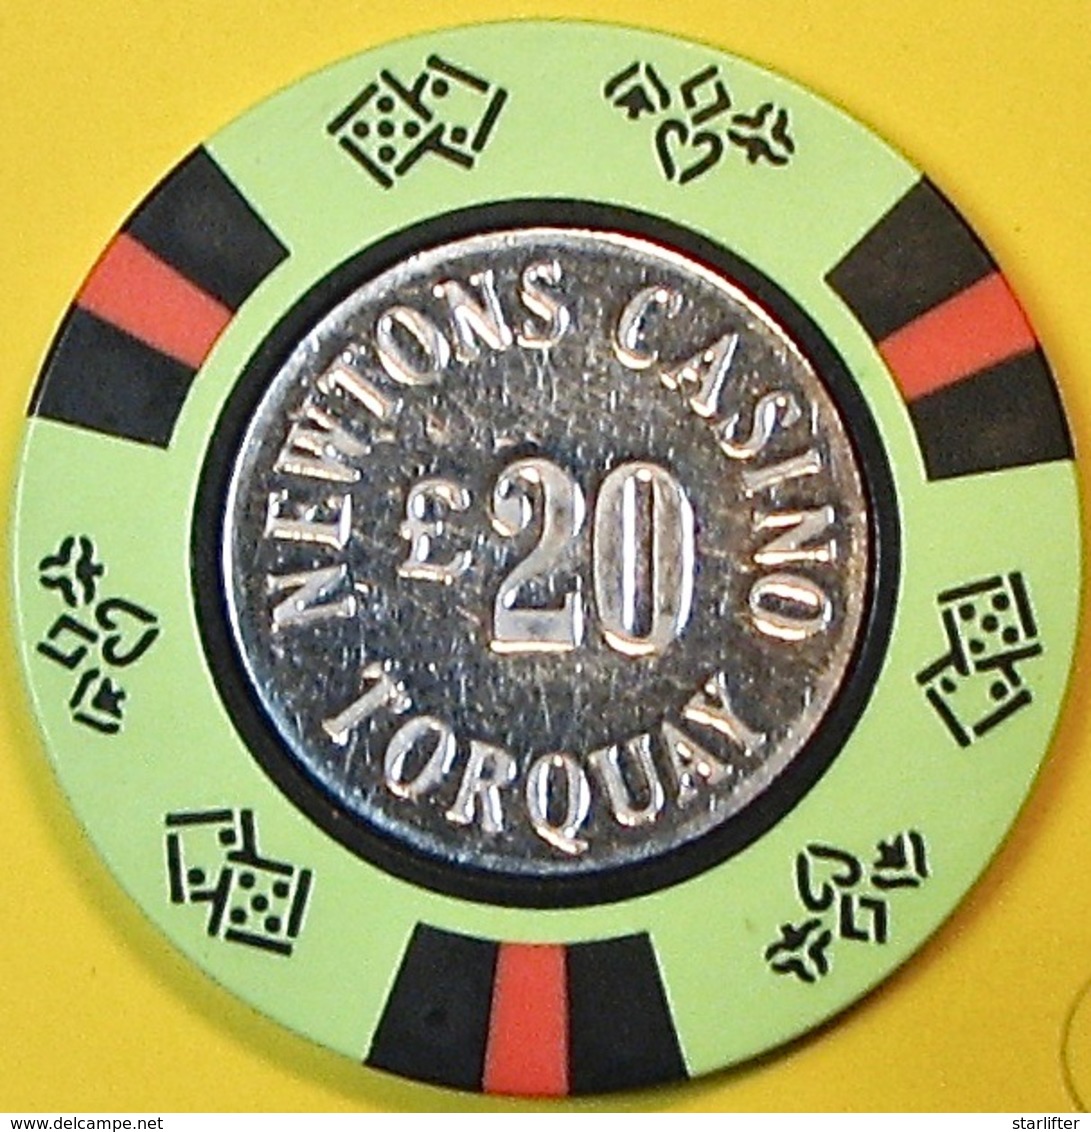 £20 Casino Chip. Newtons, Torquay, UK. Q06. - Casino